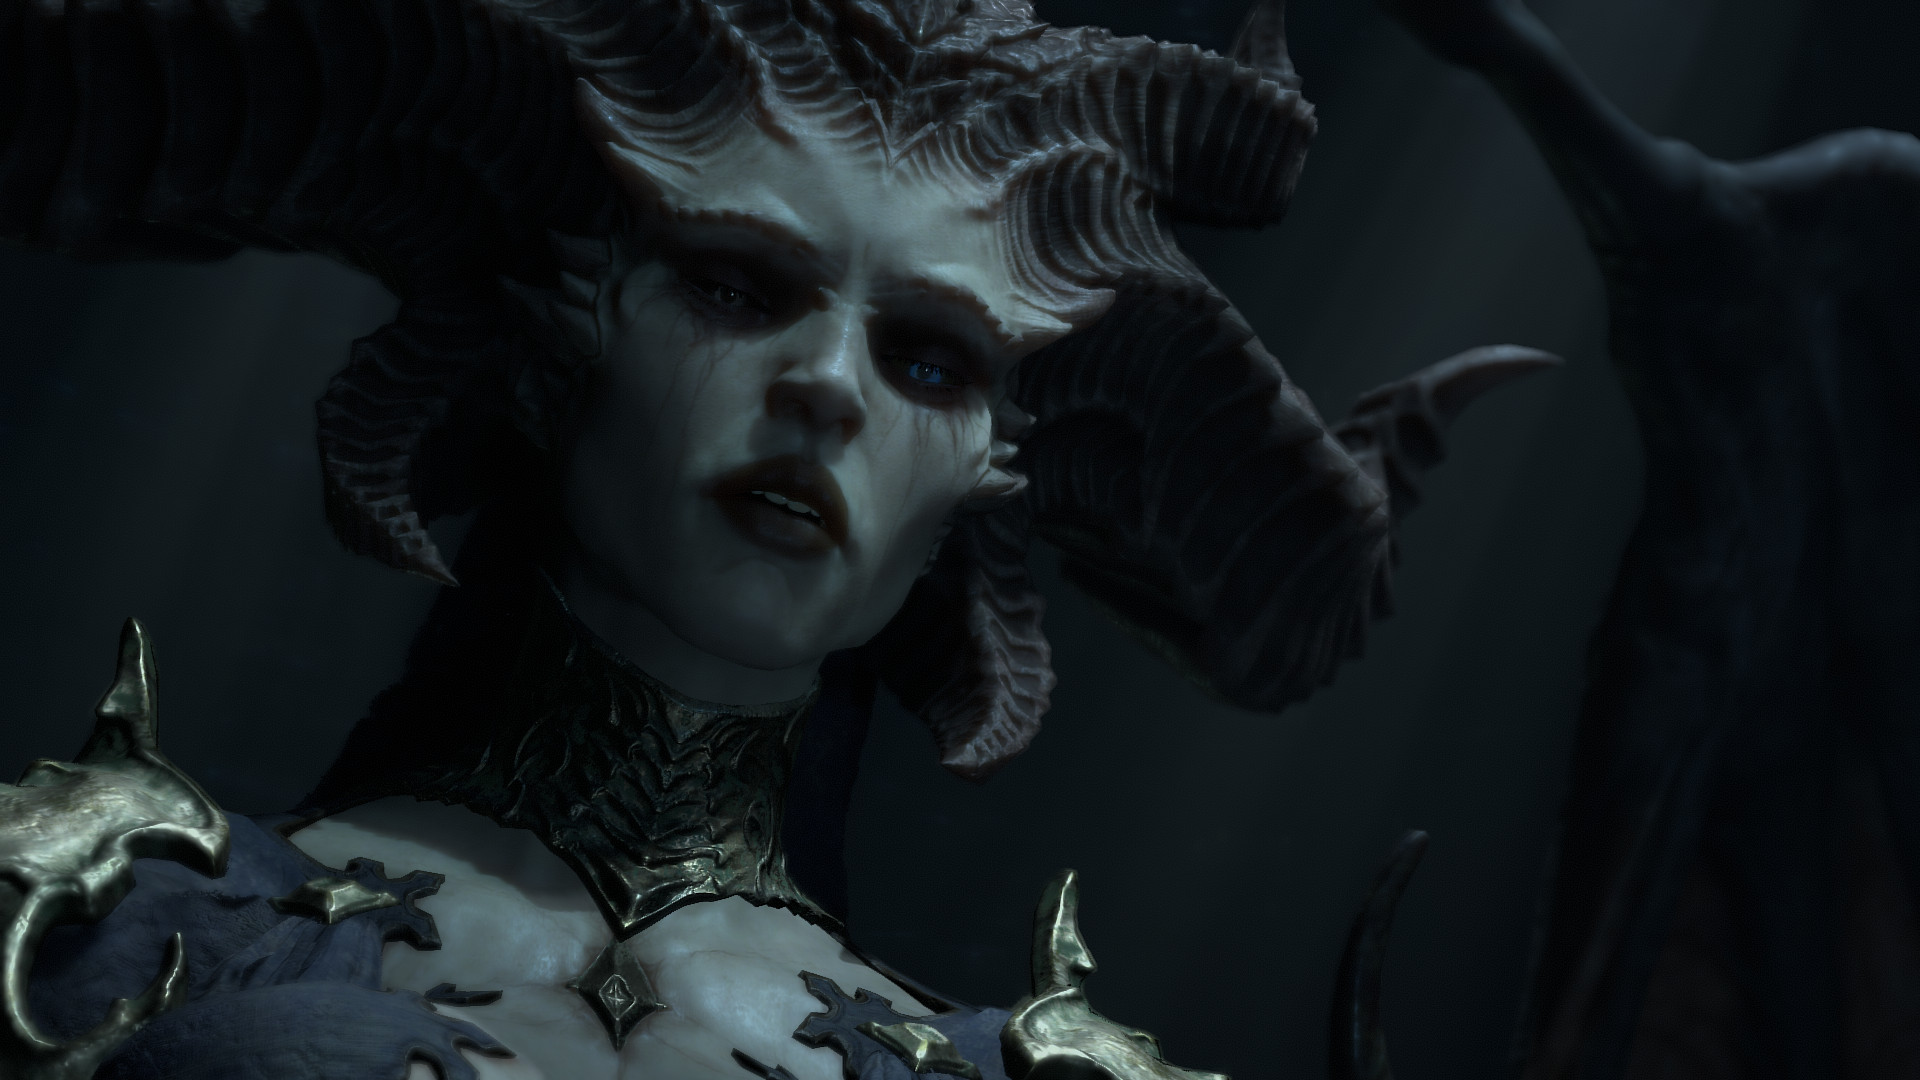 Nejlepší nastavení Diabla 4: Lilith sleduje někoho shora, v temné místnosti, s výrazem lítosti